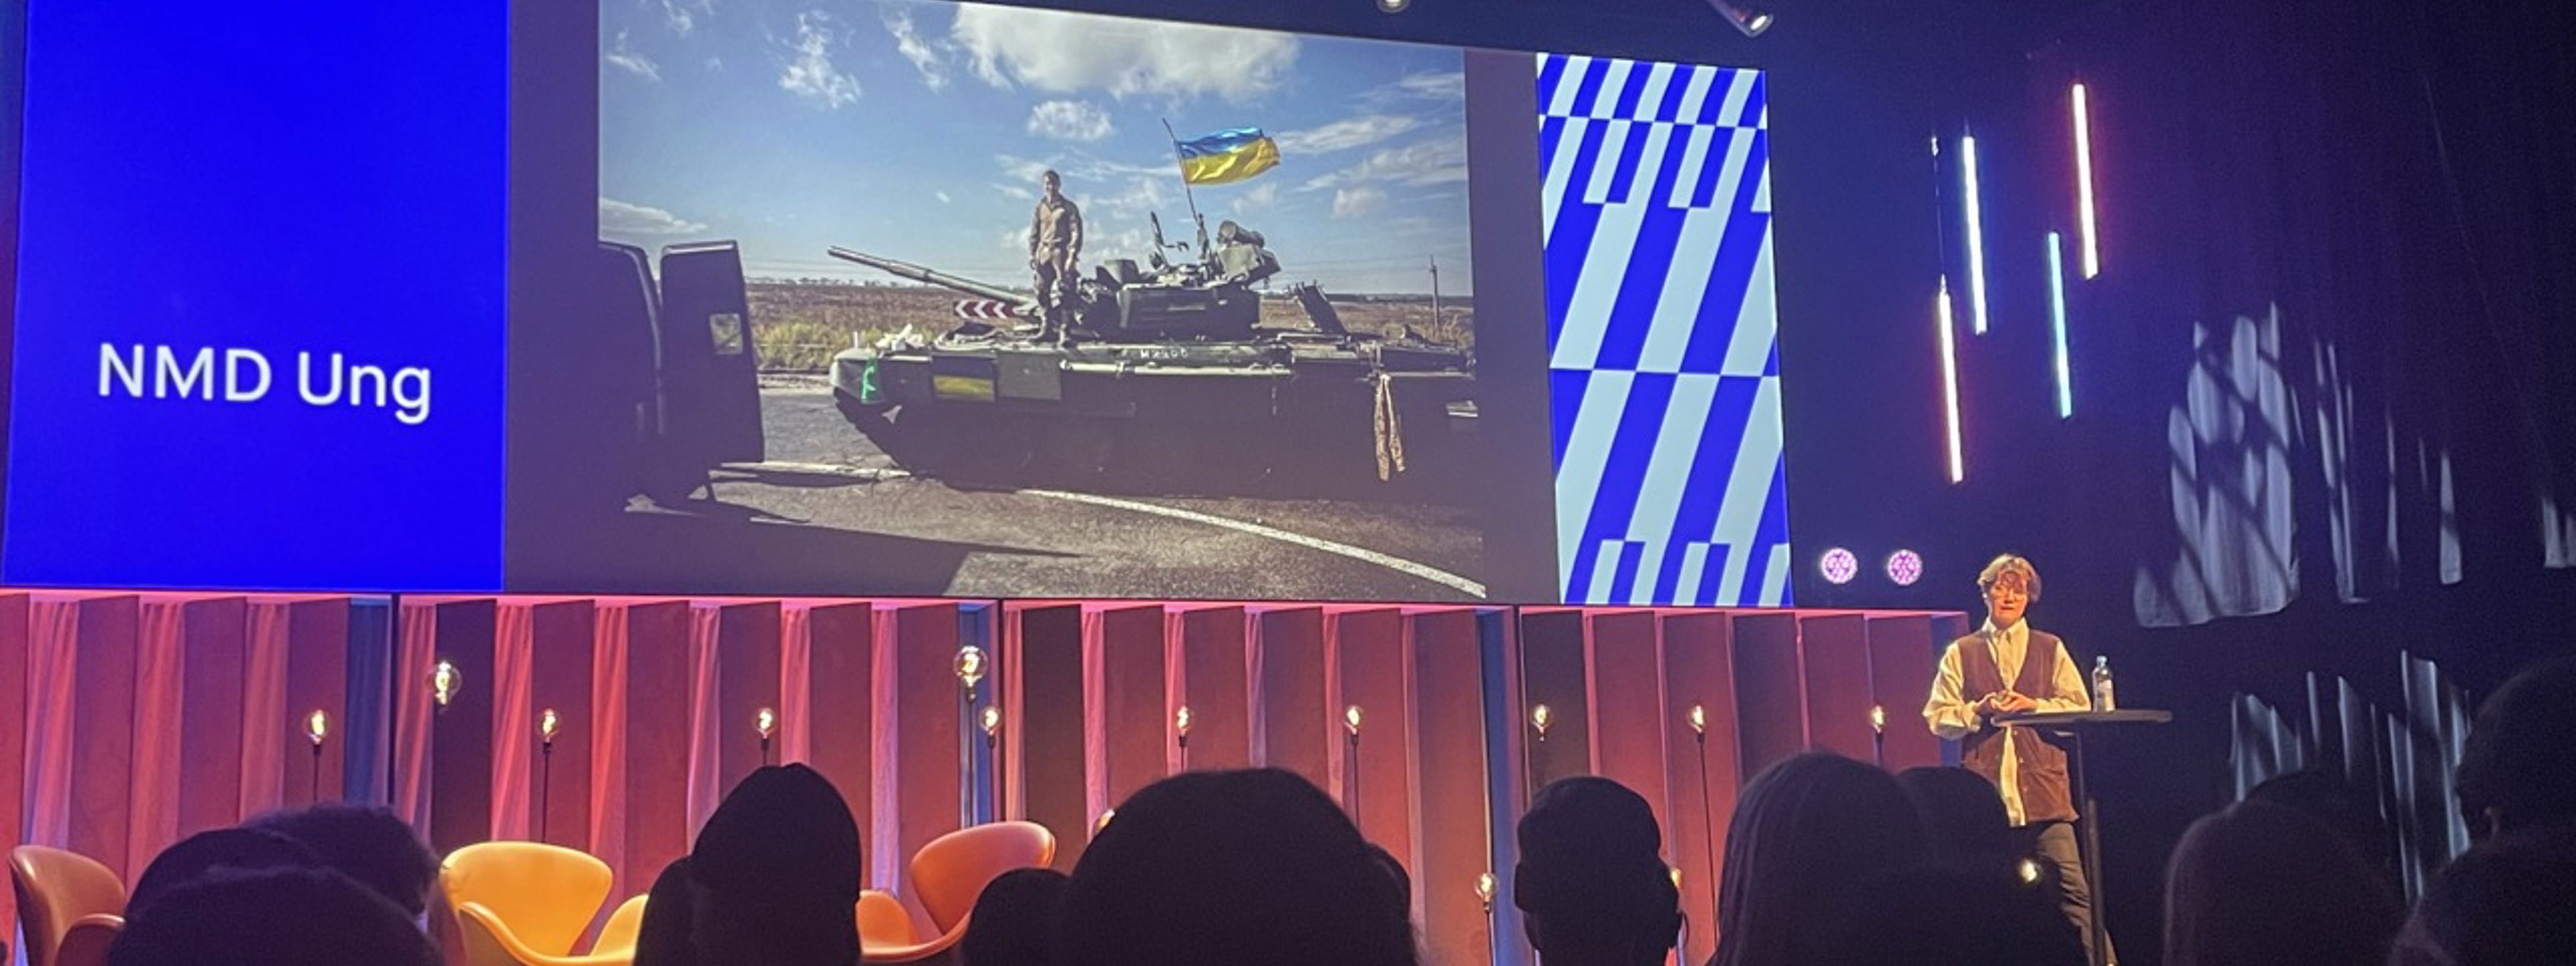 Publikum ser på presentatør på scenen med skjerm i bakgrunnen med stridsvogn fra Ukraina.